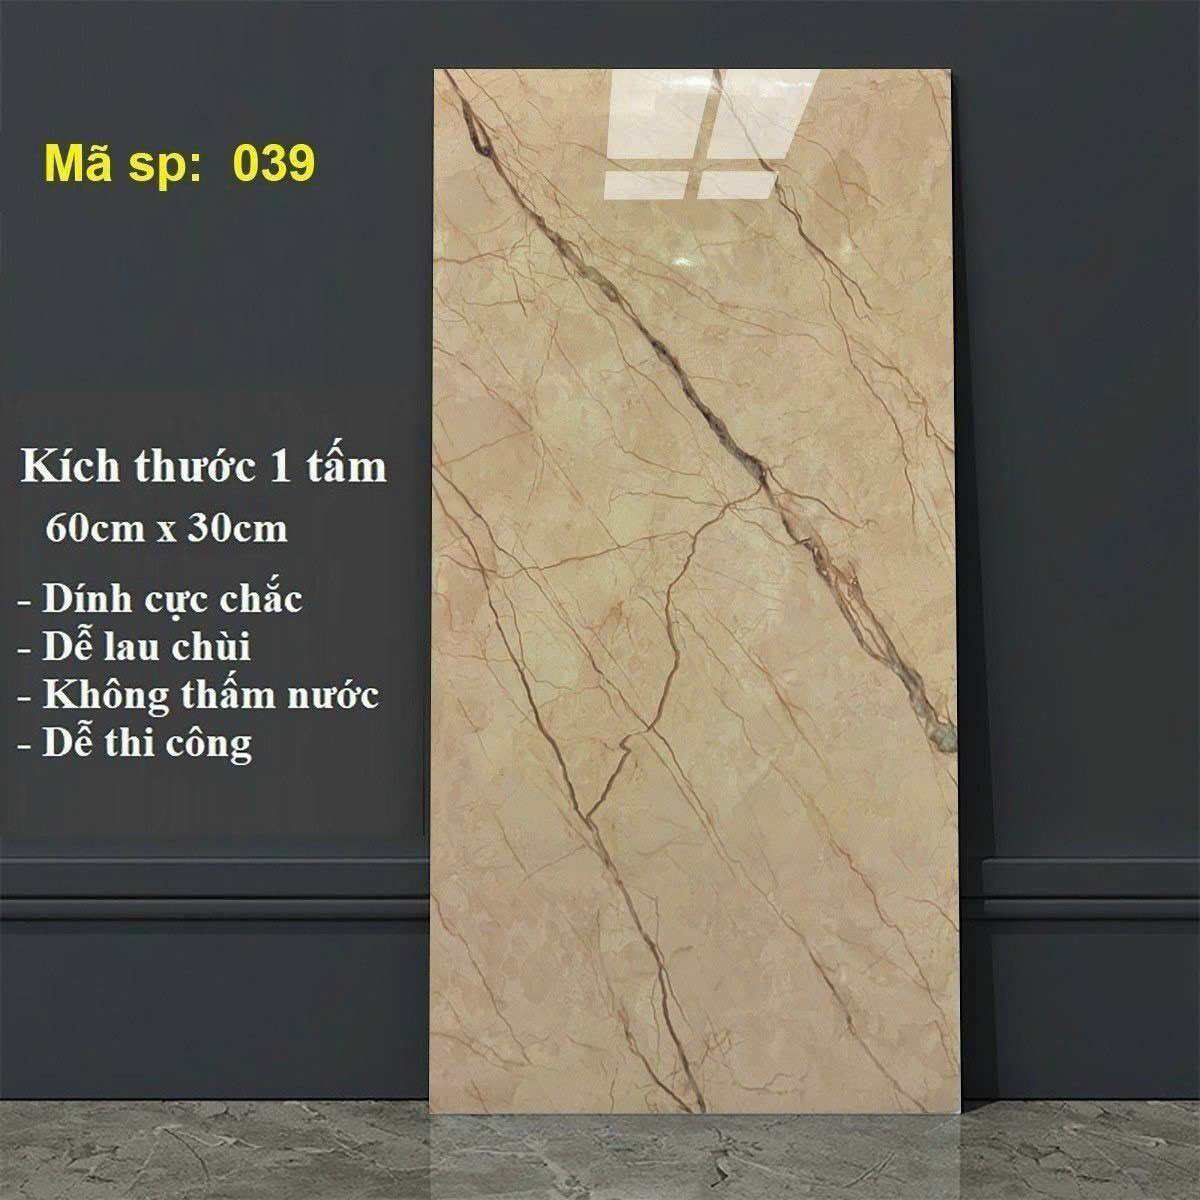 [Hoả Tốc]Tấm ốp tường PVC vân đá 30x60 có sẵn keo, Miếng dán tường giả đá cao cấp, giả gạch men giá rẻ